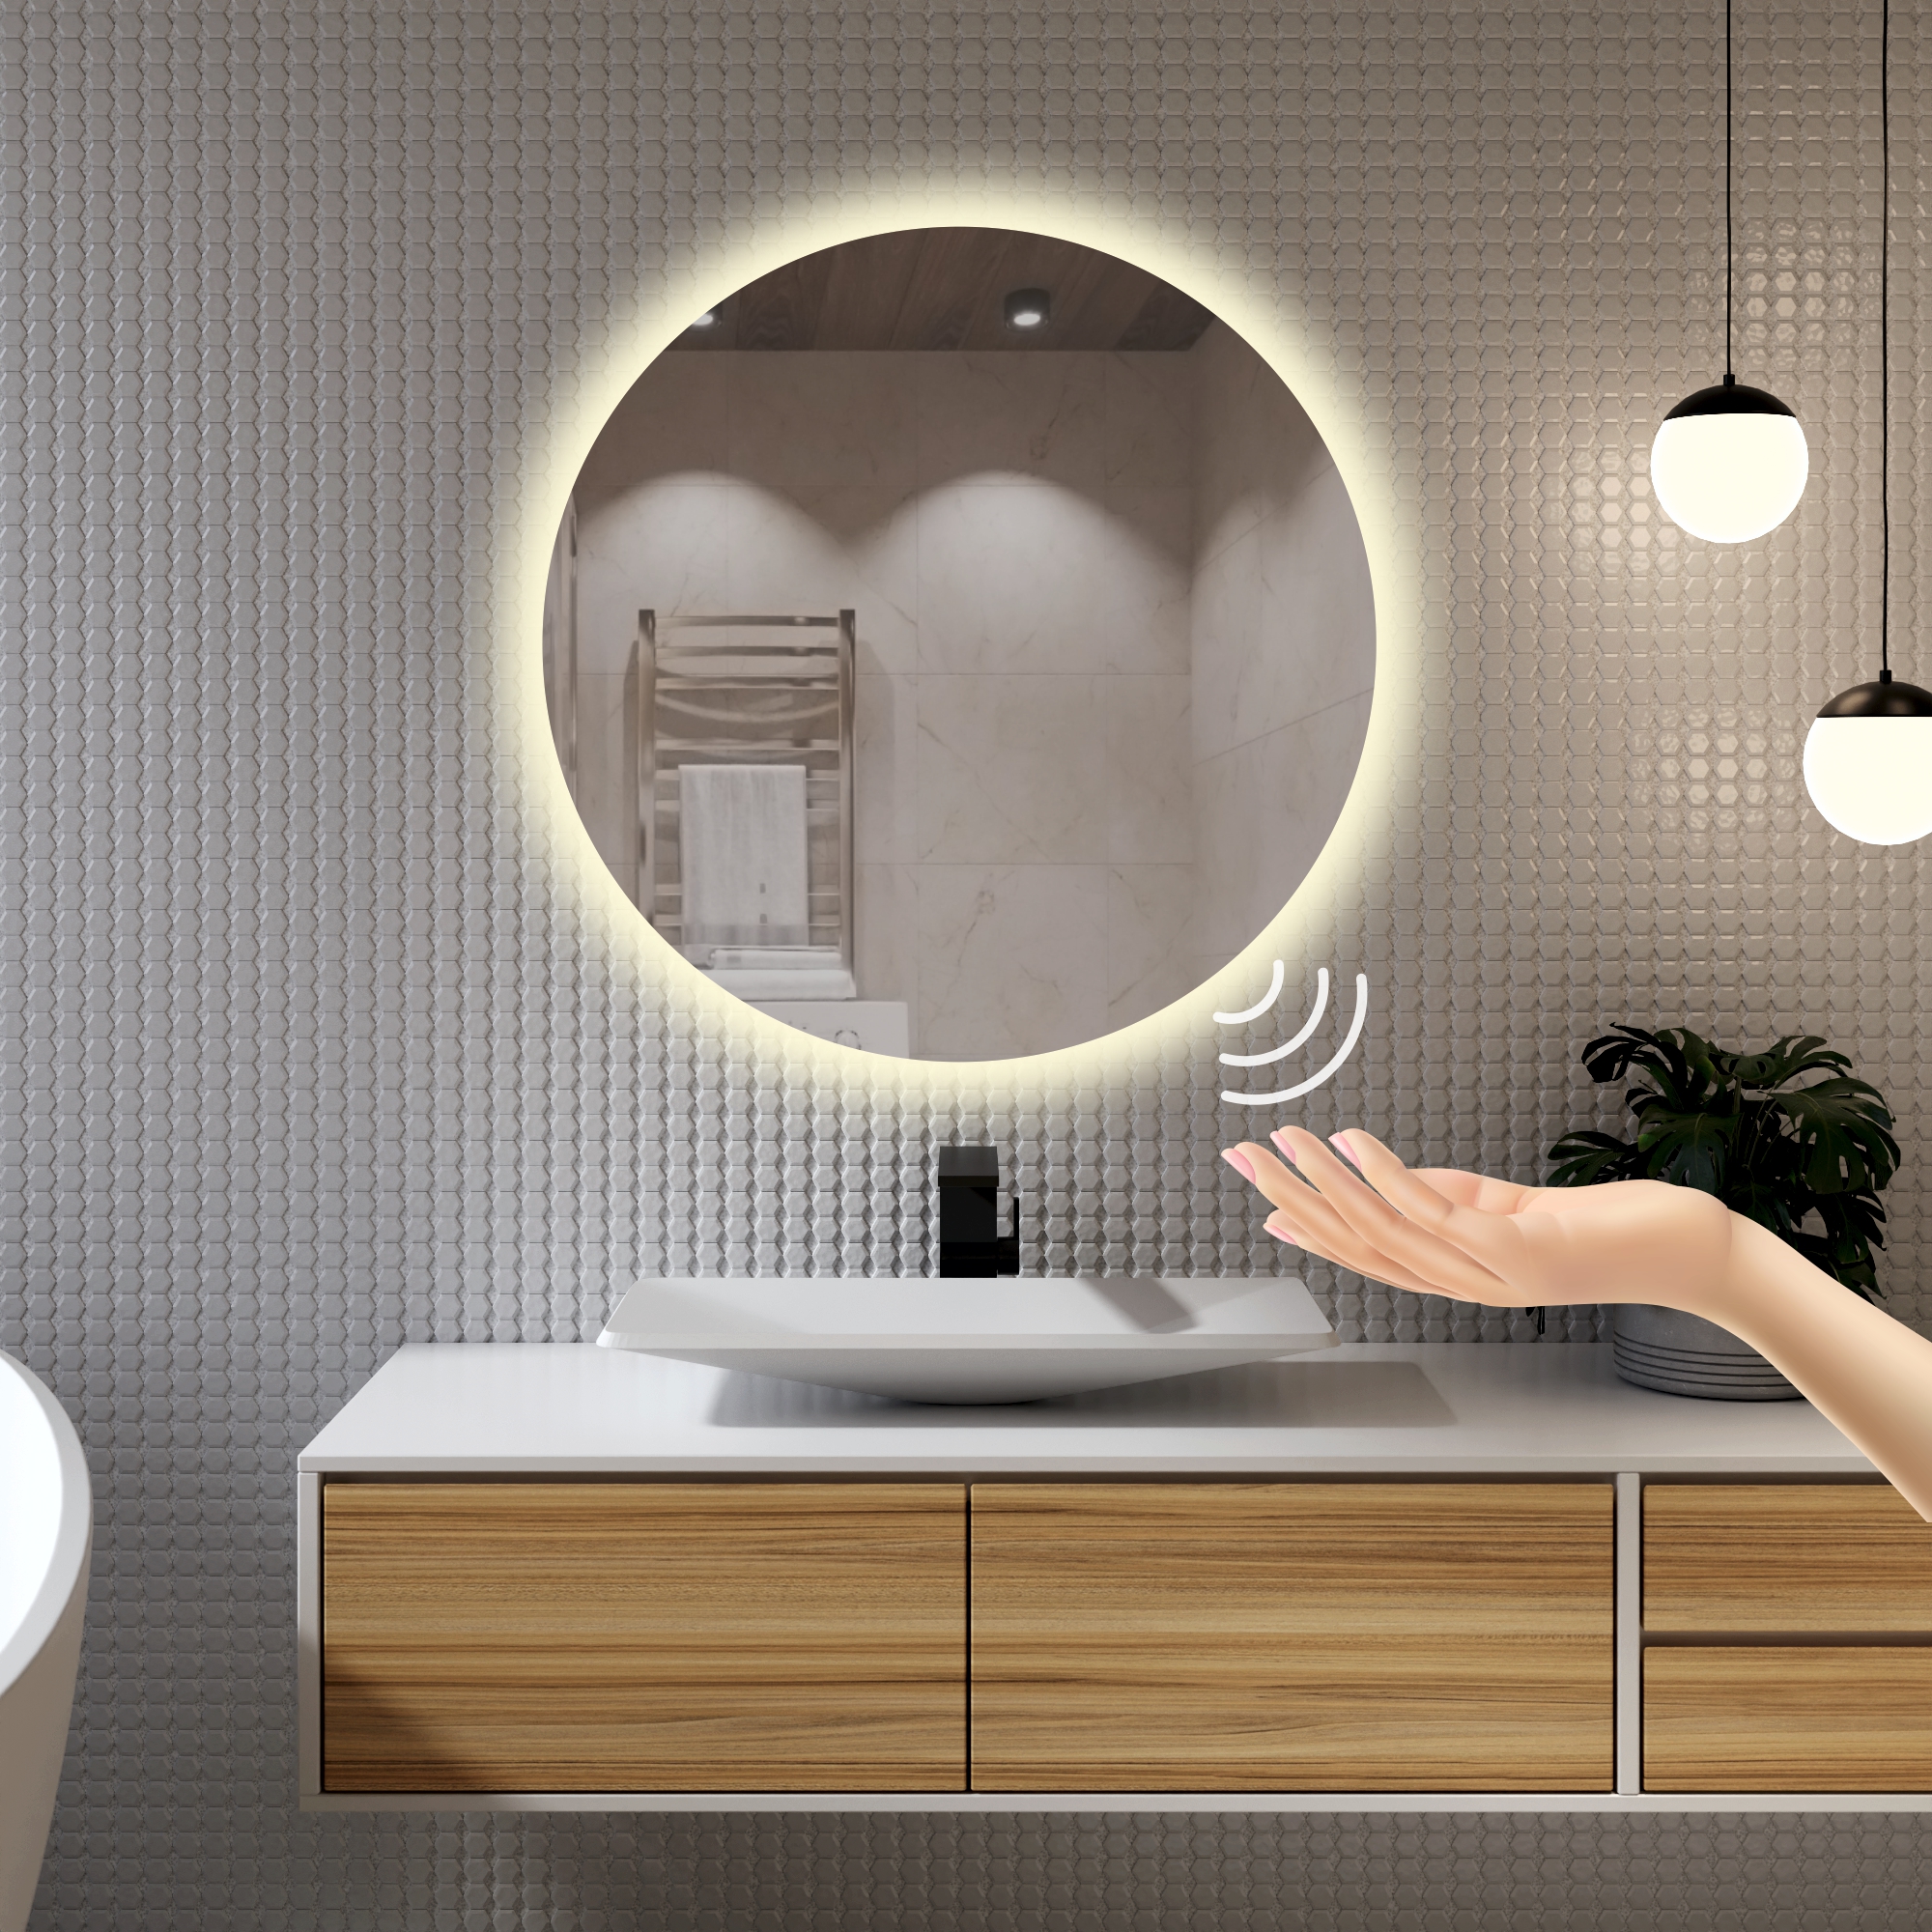 Зеркало для ванной Alfa Mirrors с дневной подсветкой 4200К круглое 60см, арт. Na-6Vzd телескопическое круглое зеркало эврика